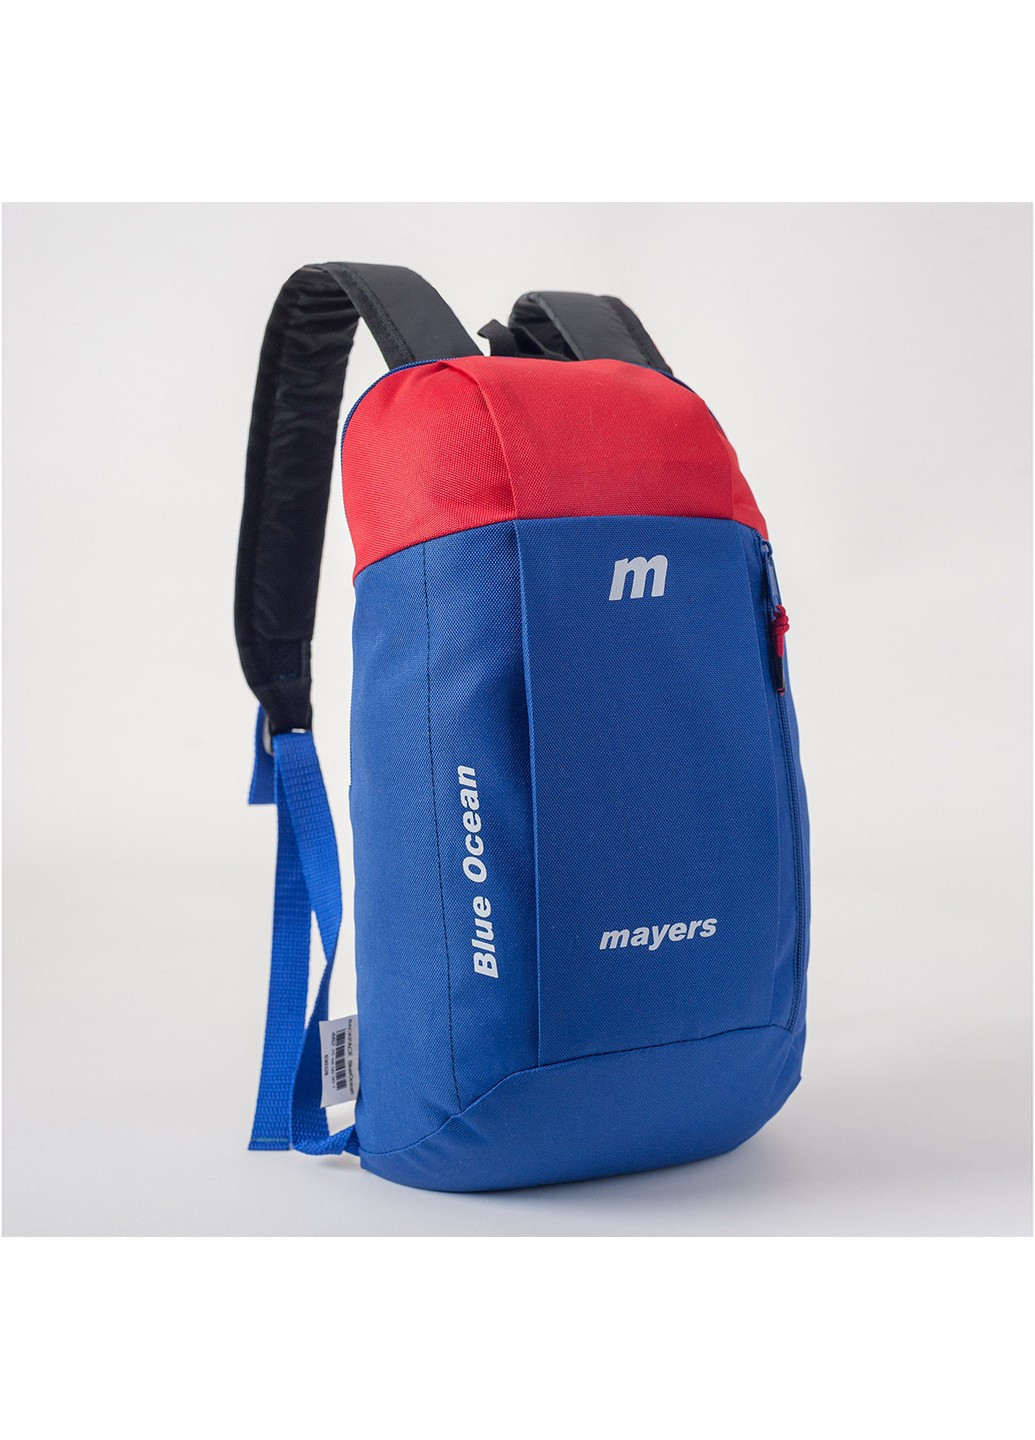 Рюкзак дитячий синій з червоним для хлопчика у спортивному стили No Brand (258591374)